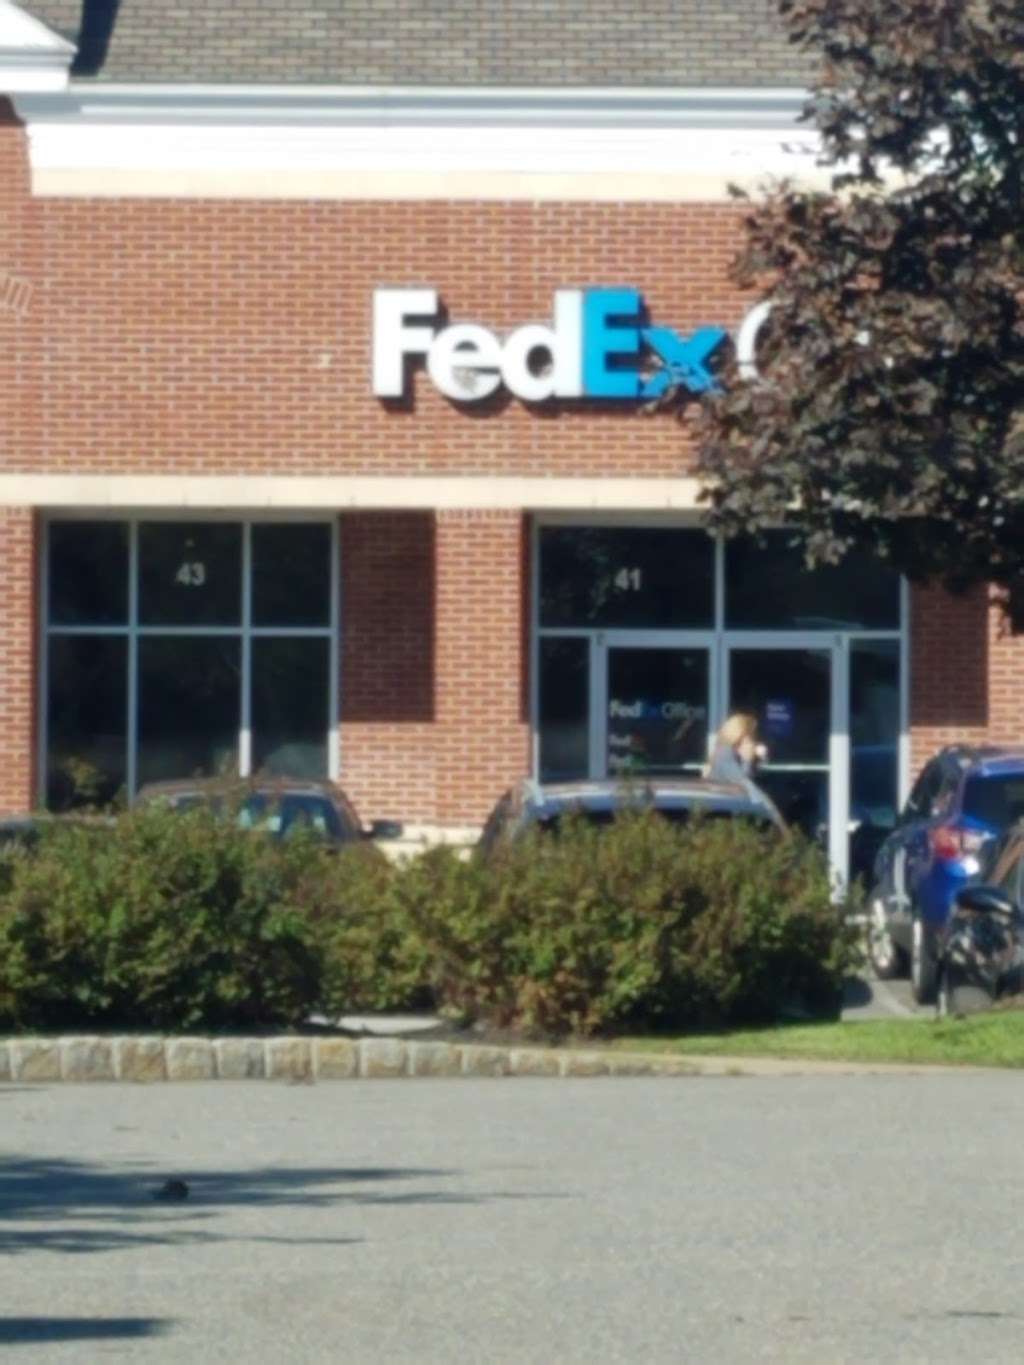 FedEx Office Print & Ship Center | 41 Eisenhower Pkwy, Roseland, NJ 07068 | Phone: (973) 618-0950